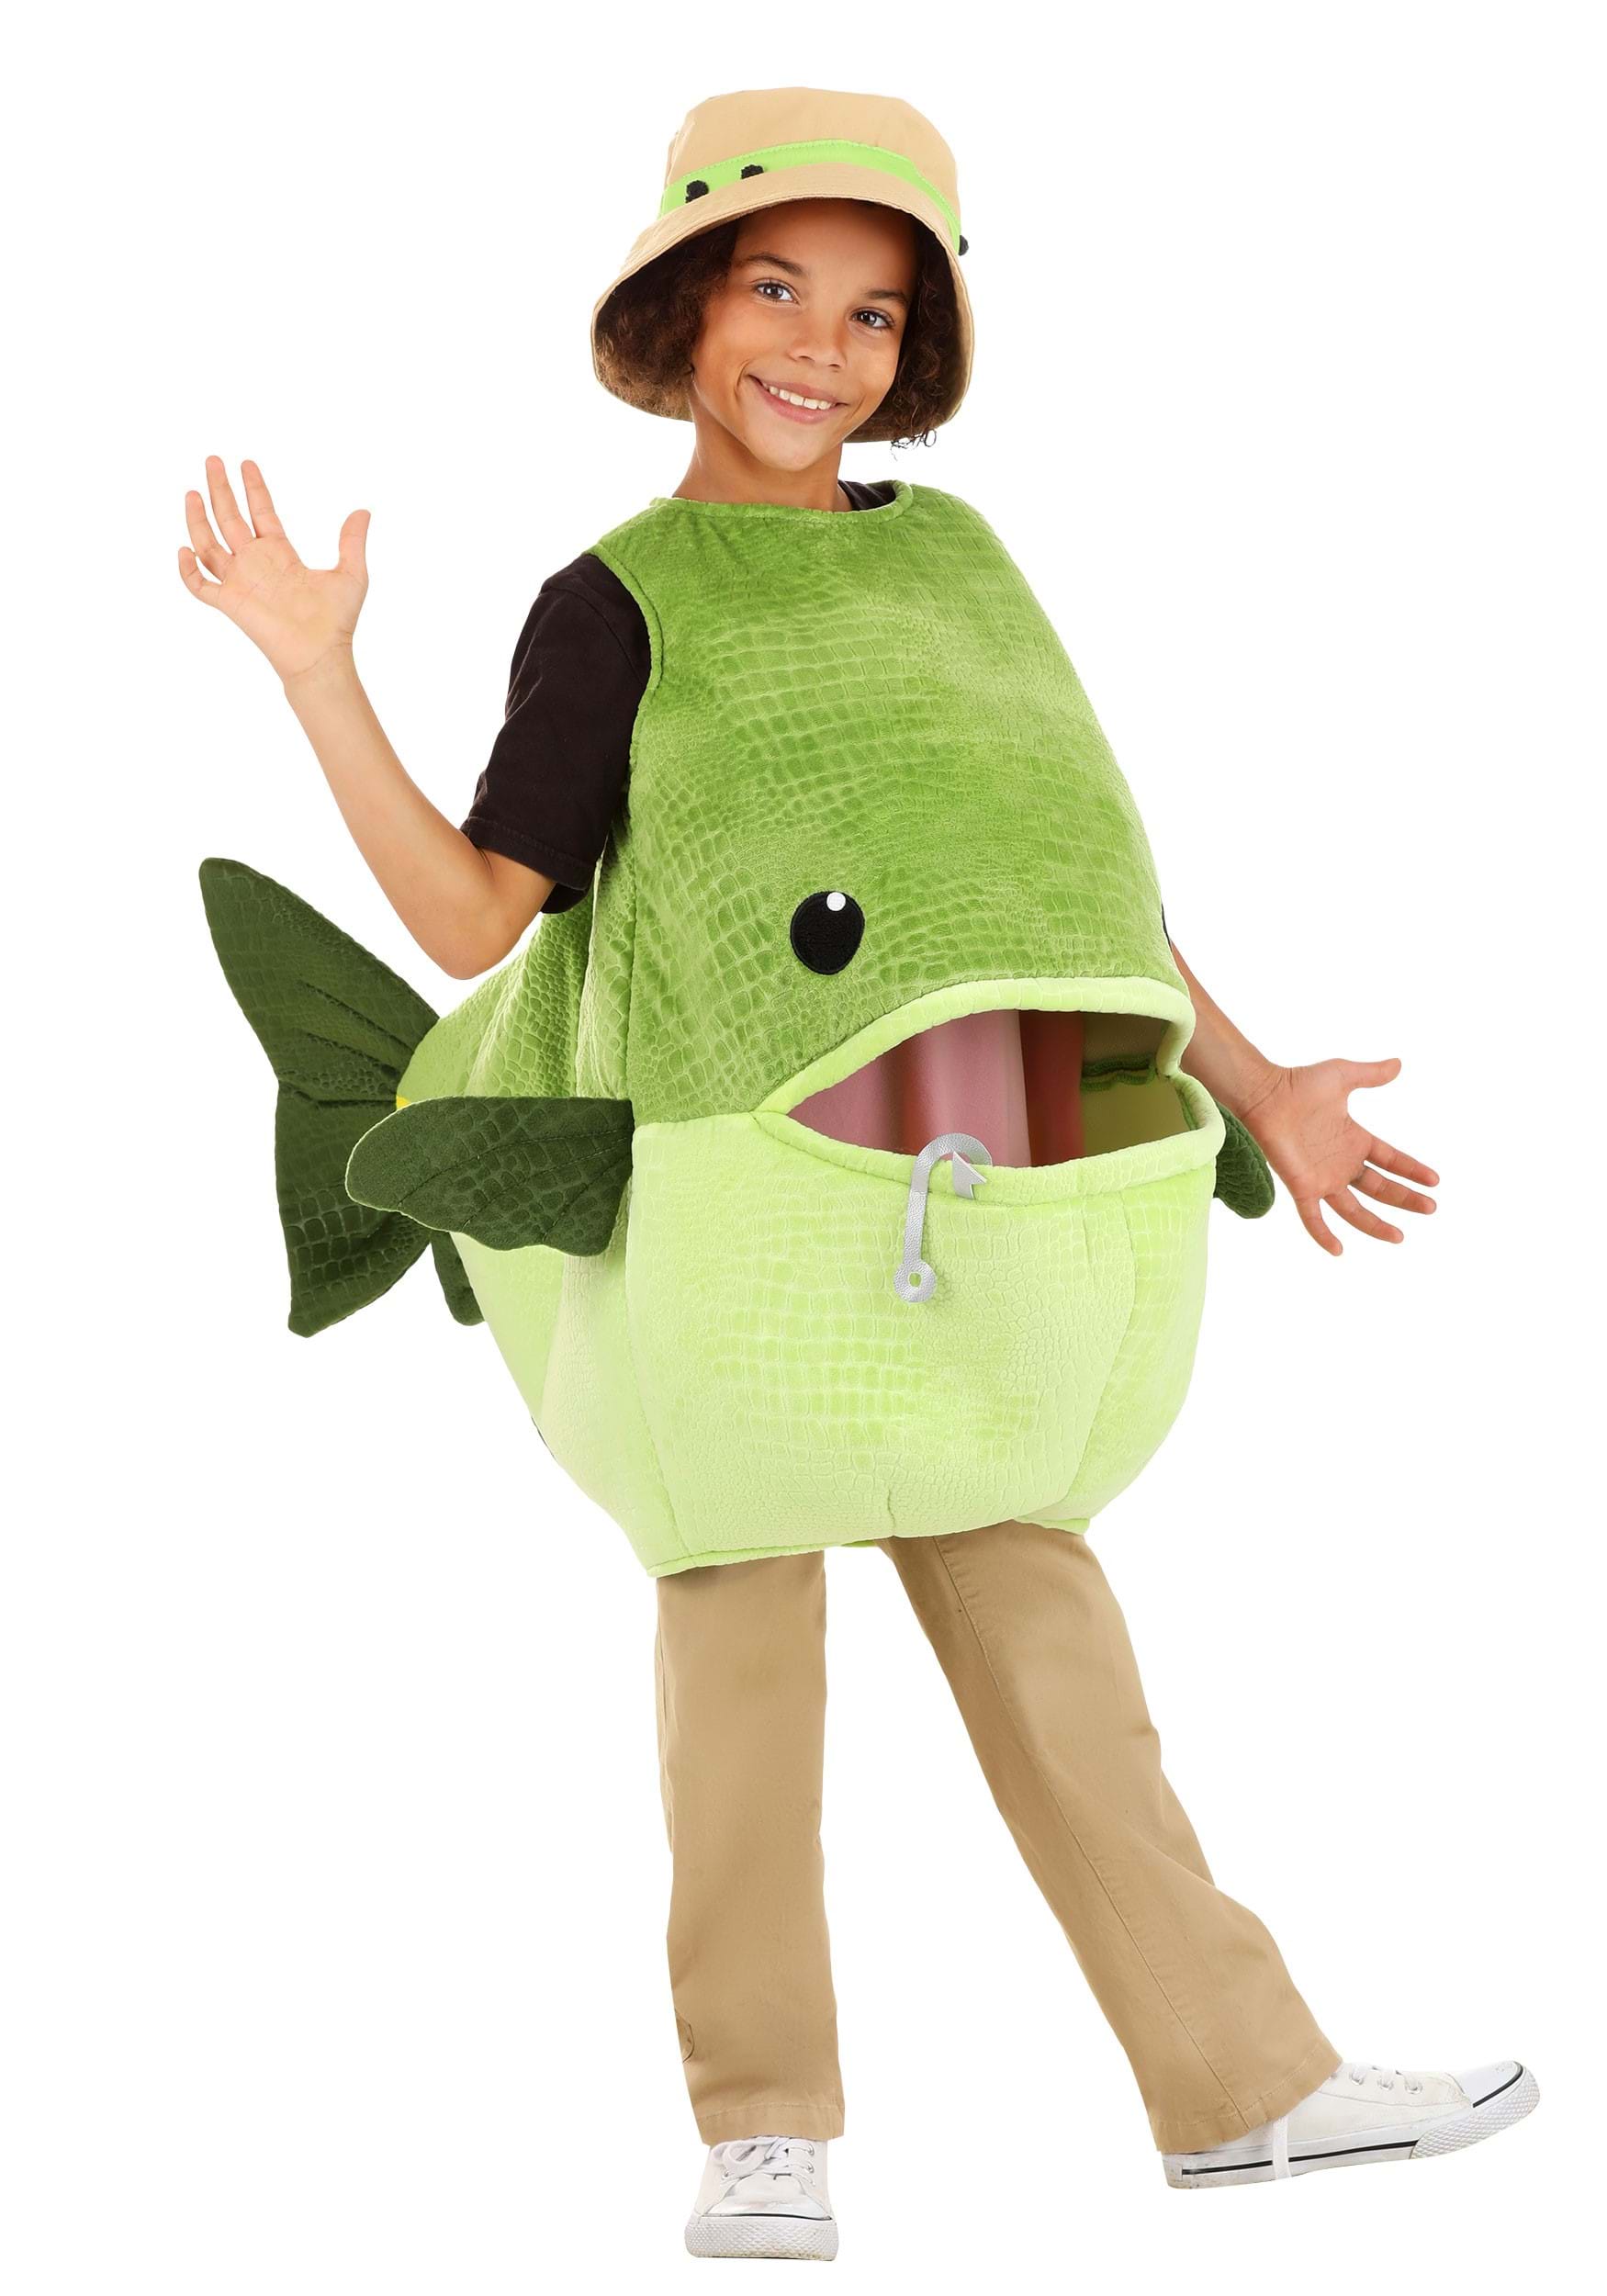 Fishing Costume